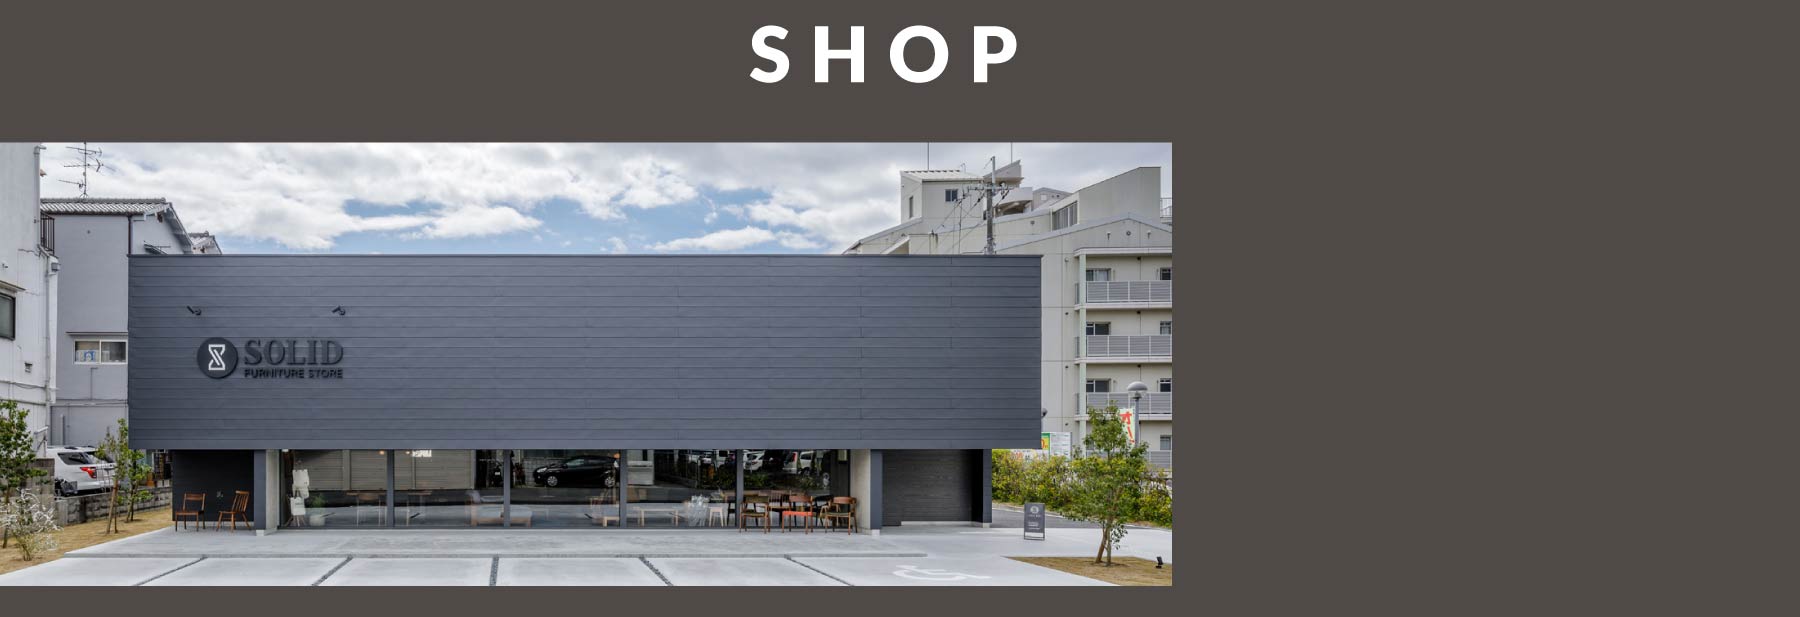 SOLID大阪では本格的な無垢材の家具を扱い、納得の家具をご案内いたします。